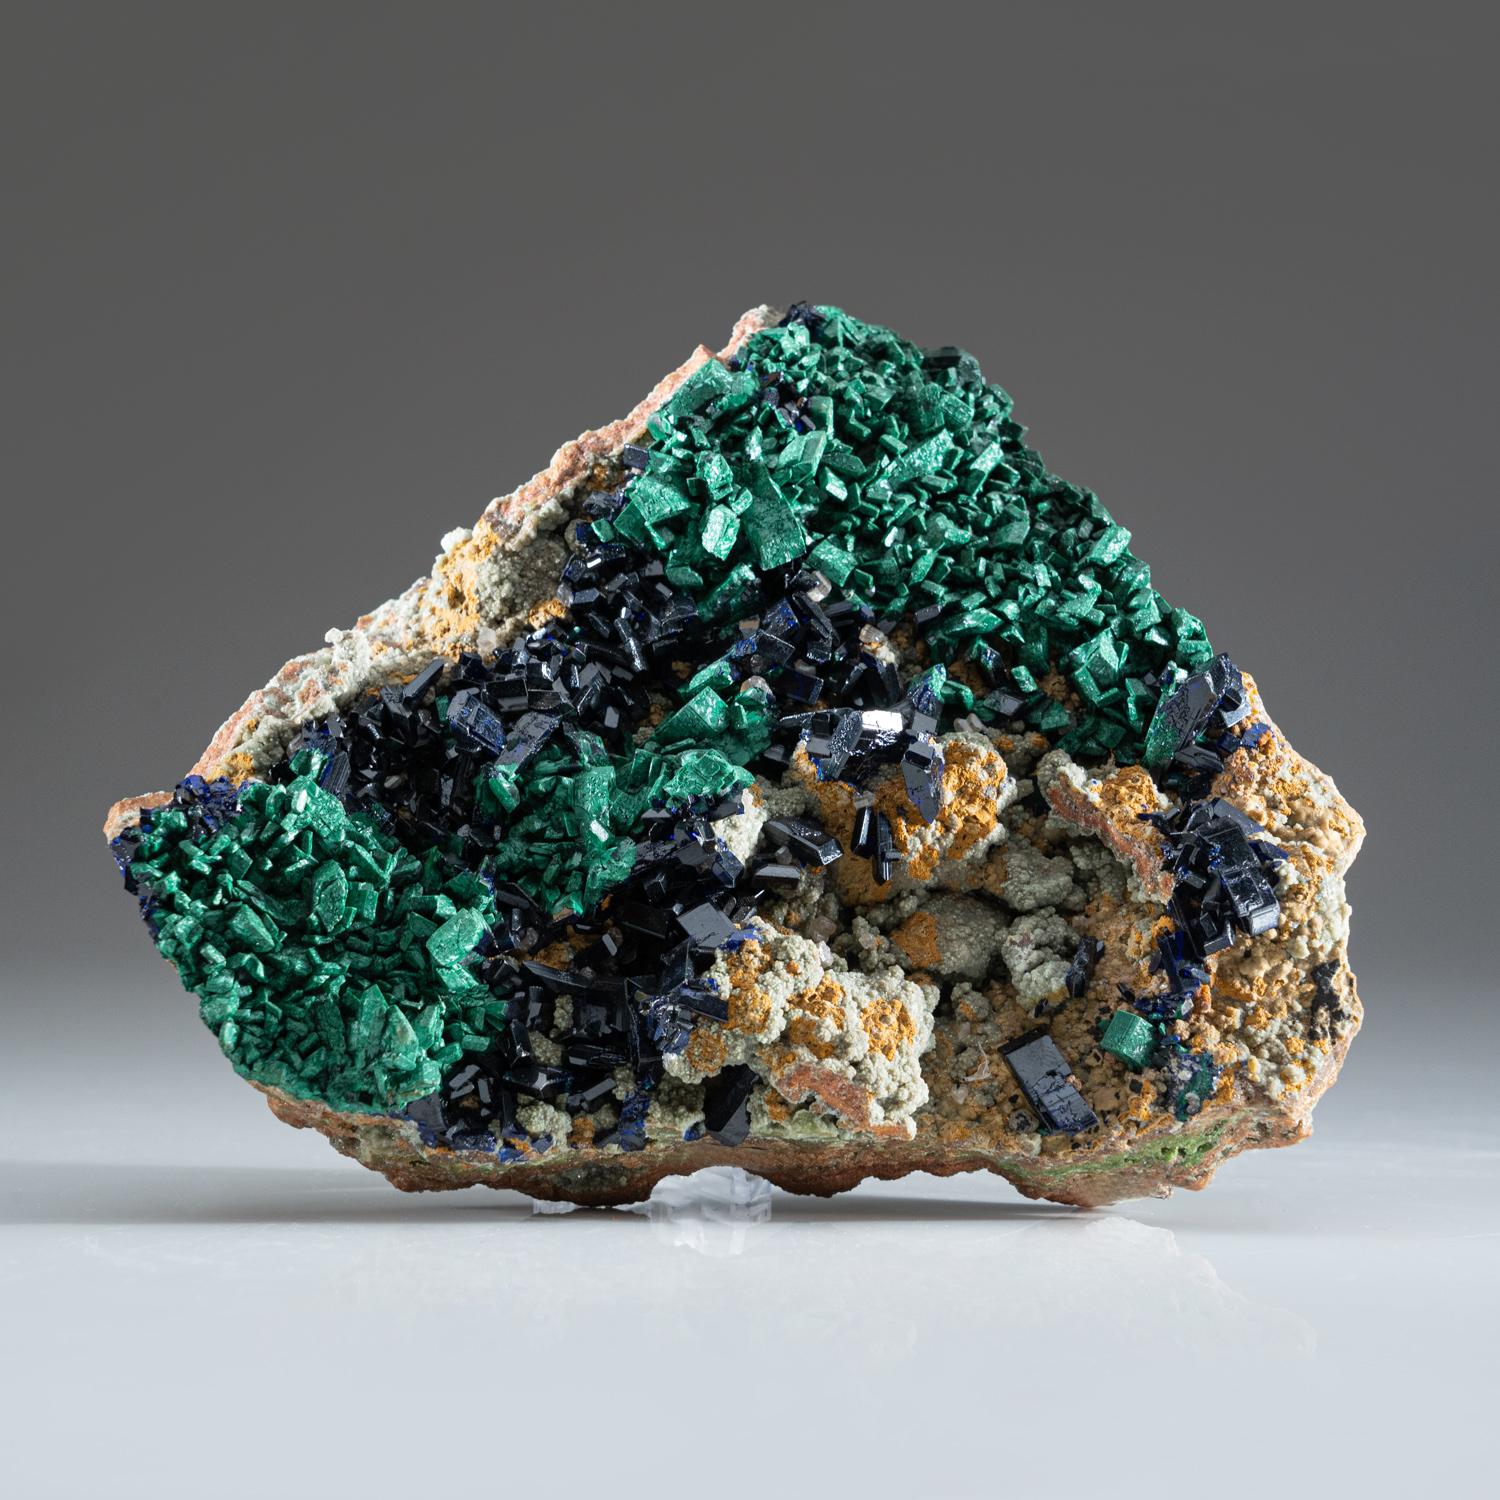 Azurite et malachite de la mine de Tsumeb, district d'Otavi-Bergland, Oshikoto, Namibie.

Riche amas de cristaux d'azurite bleu foncé lustrés sur une matrice de malachite-duftite-calcite. Tous les cristaux d'azurite sont très brillants et présentent